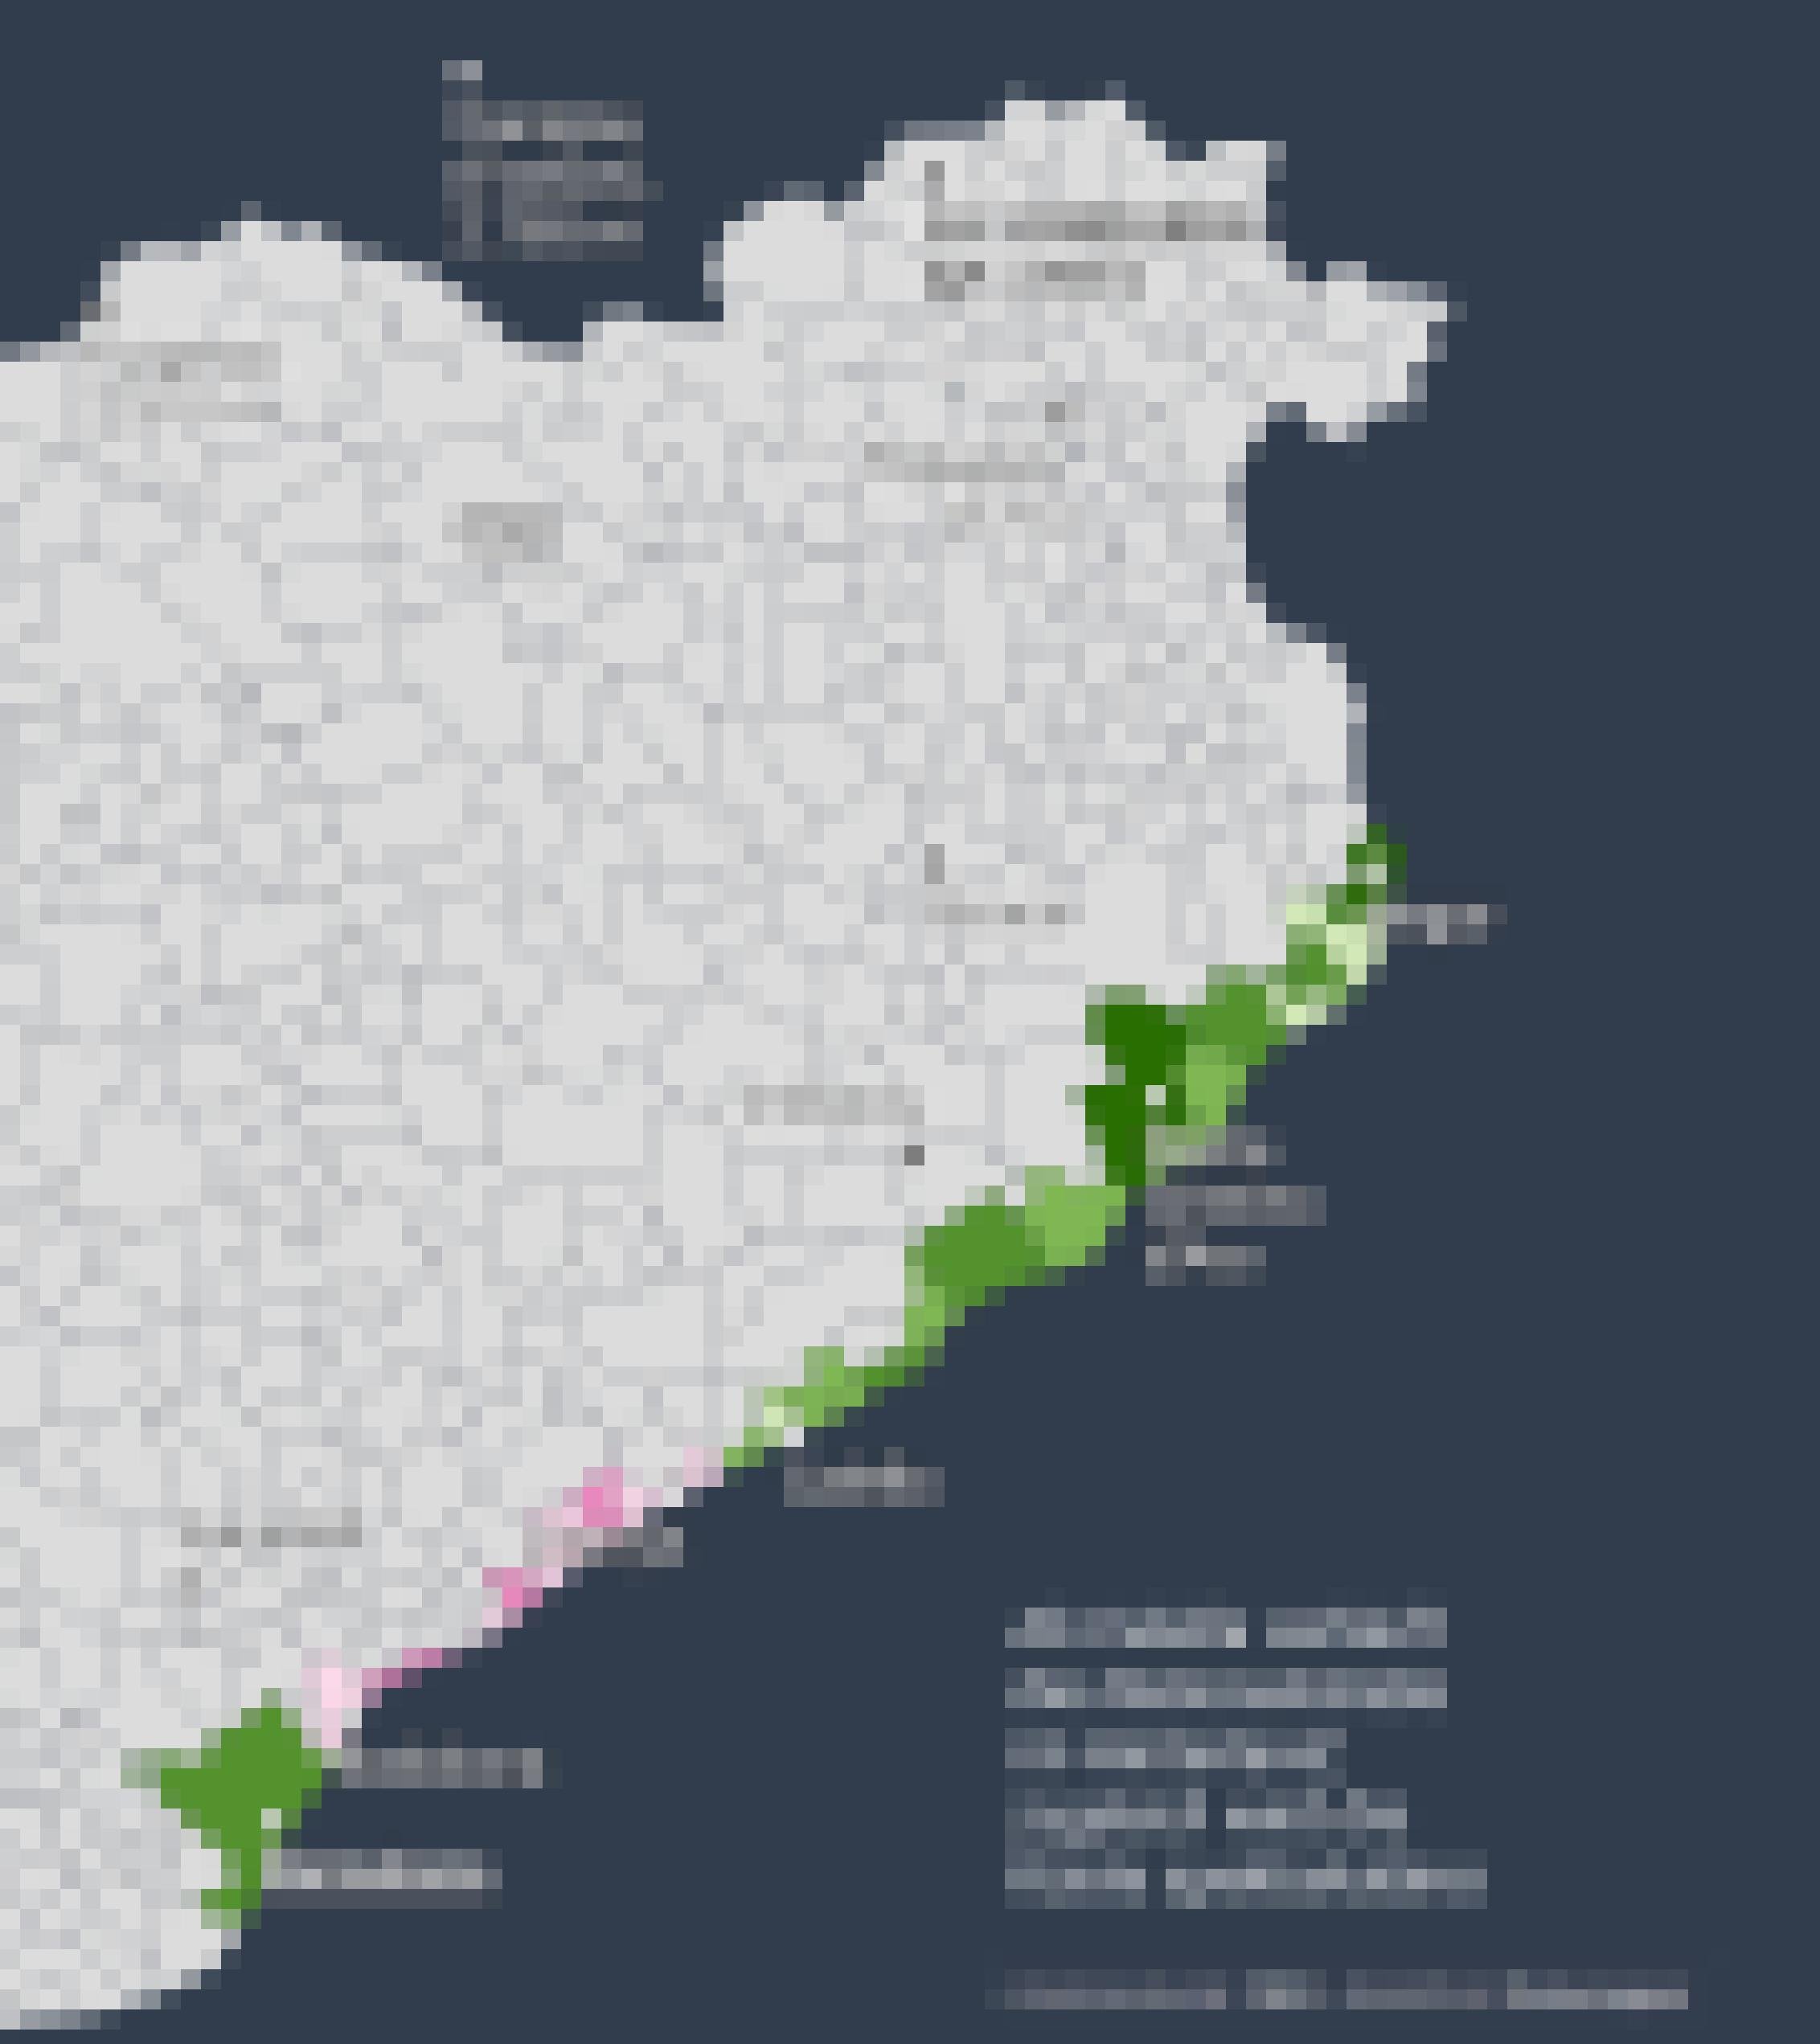 Karte Ostkataloniens, auf der die ans Mittelmeer grenzenden Kommunen zwischen Barcelona und Begur verschiedenfarbig markiert sind, abgestuft von Dinkelgrün (maximale Fahrradfreundlichkeit) bis hinunter zu grellem Magenta (minimale Freundlichkeit).